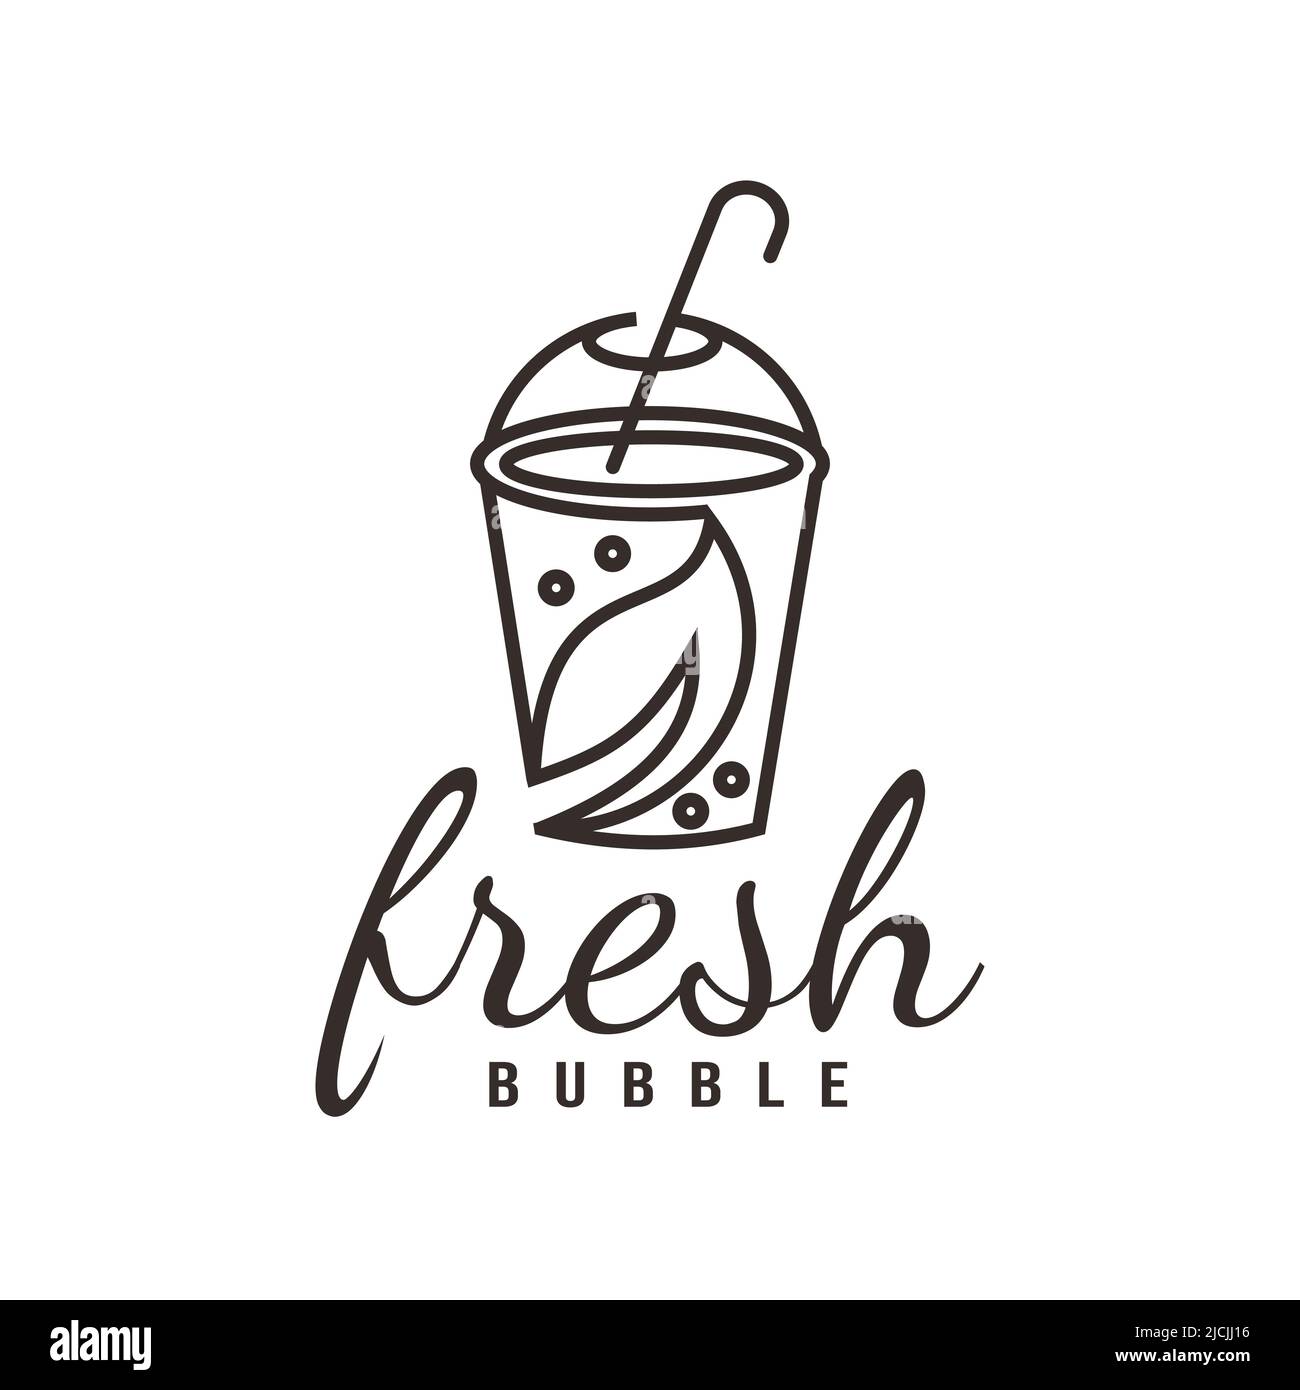 Frische Milch Bubble Tea Logo Illustration Design gesunde Getränk Perle stilisierte Linie Symbol Stock Vektor